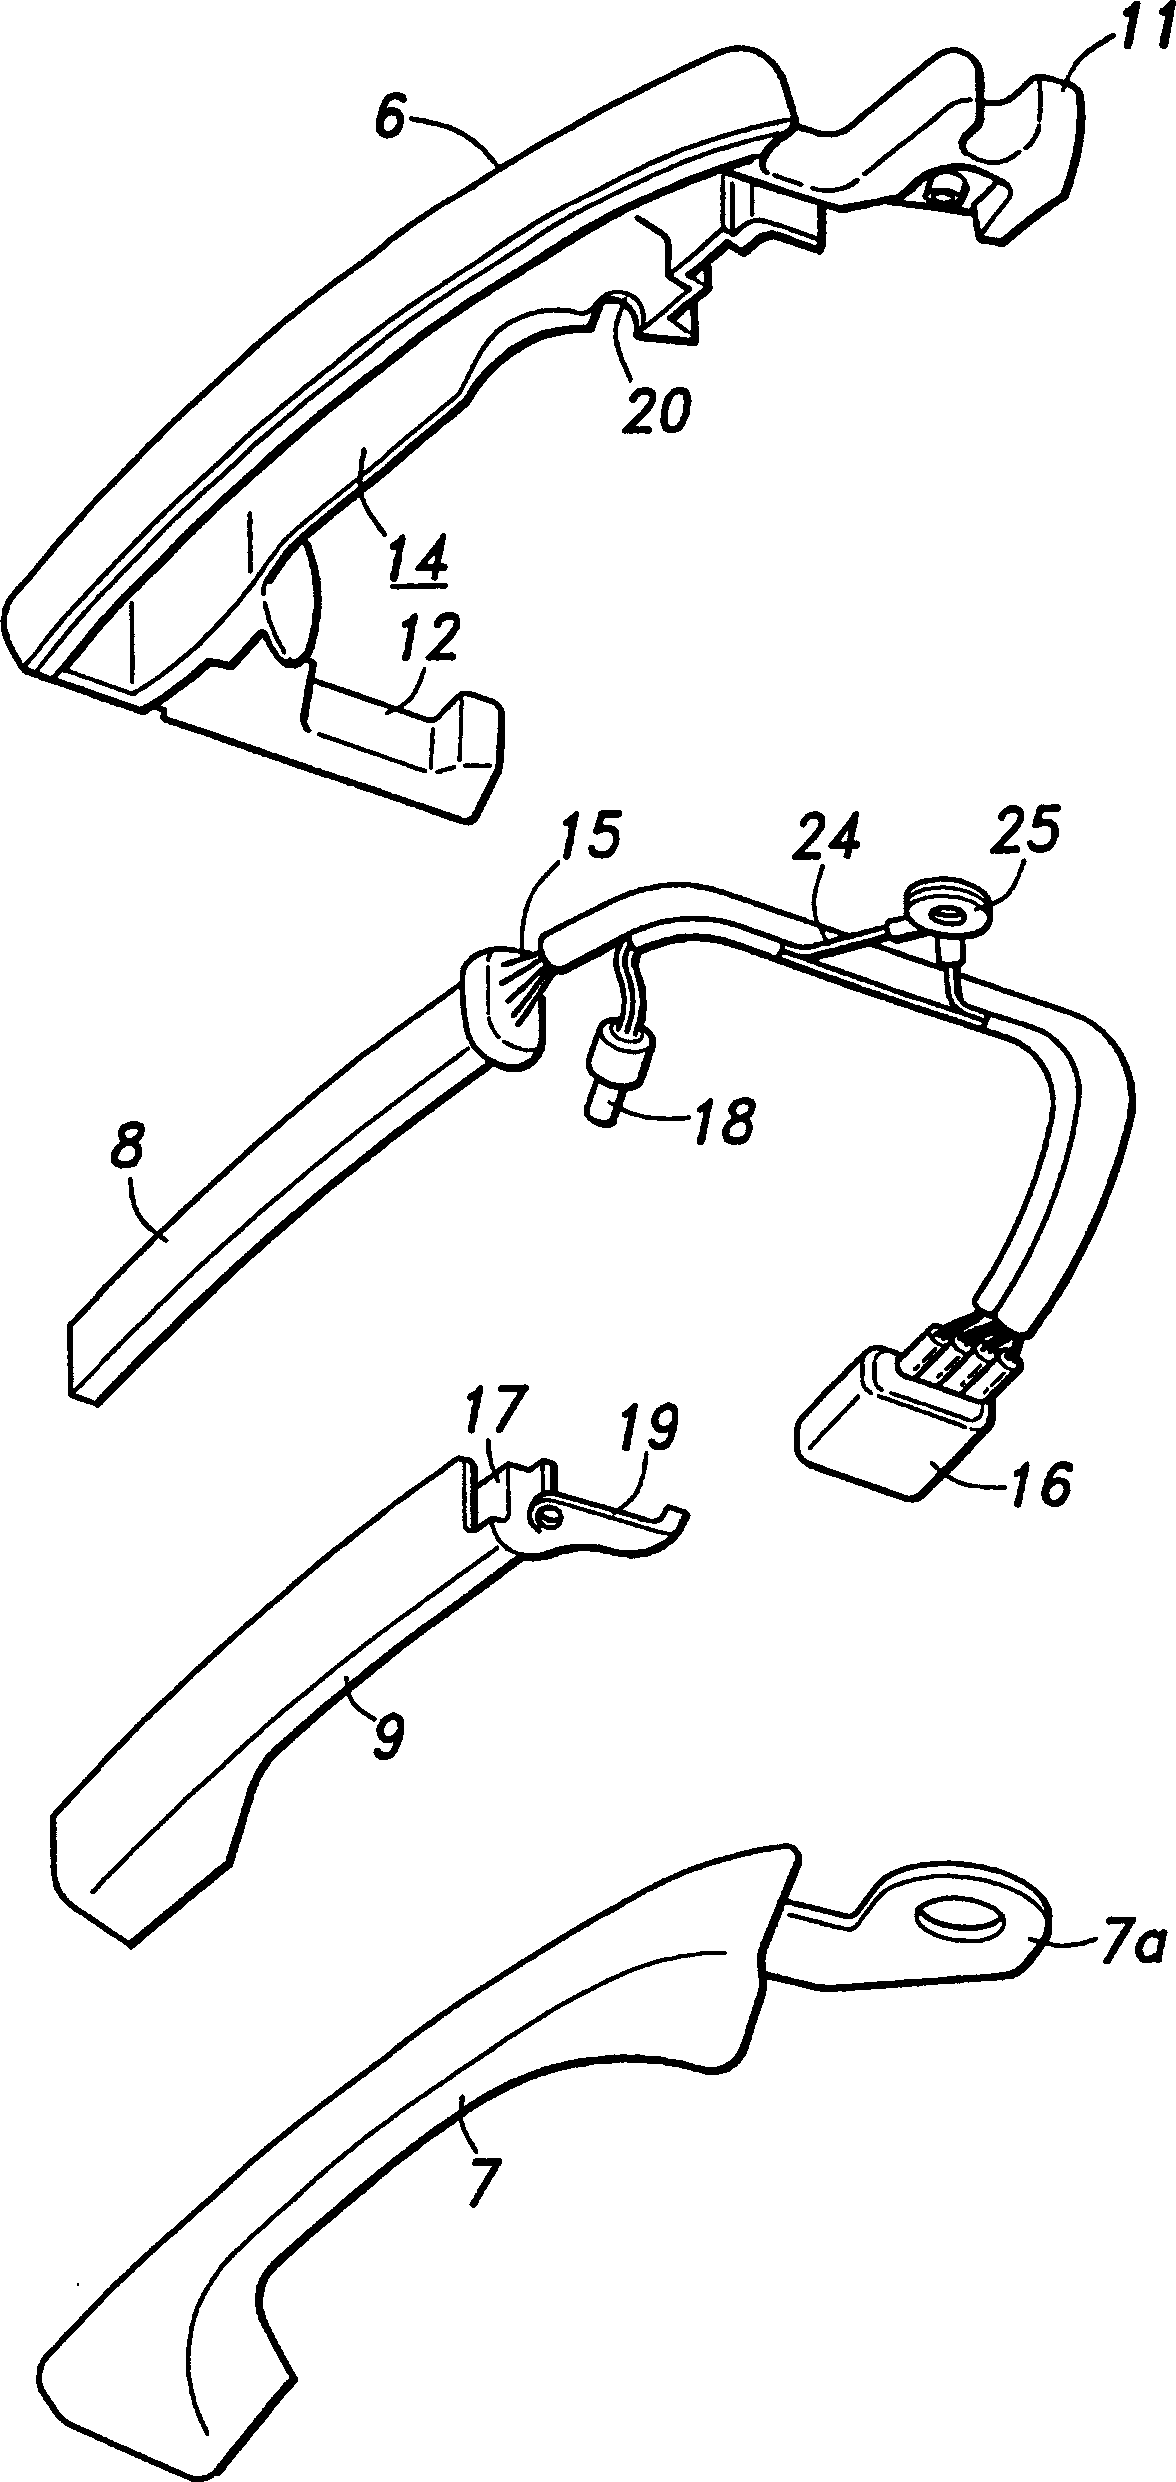 Vehicle door handle device